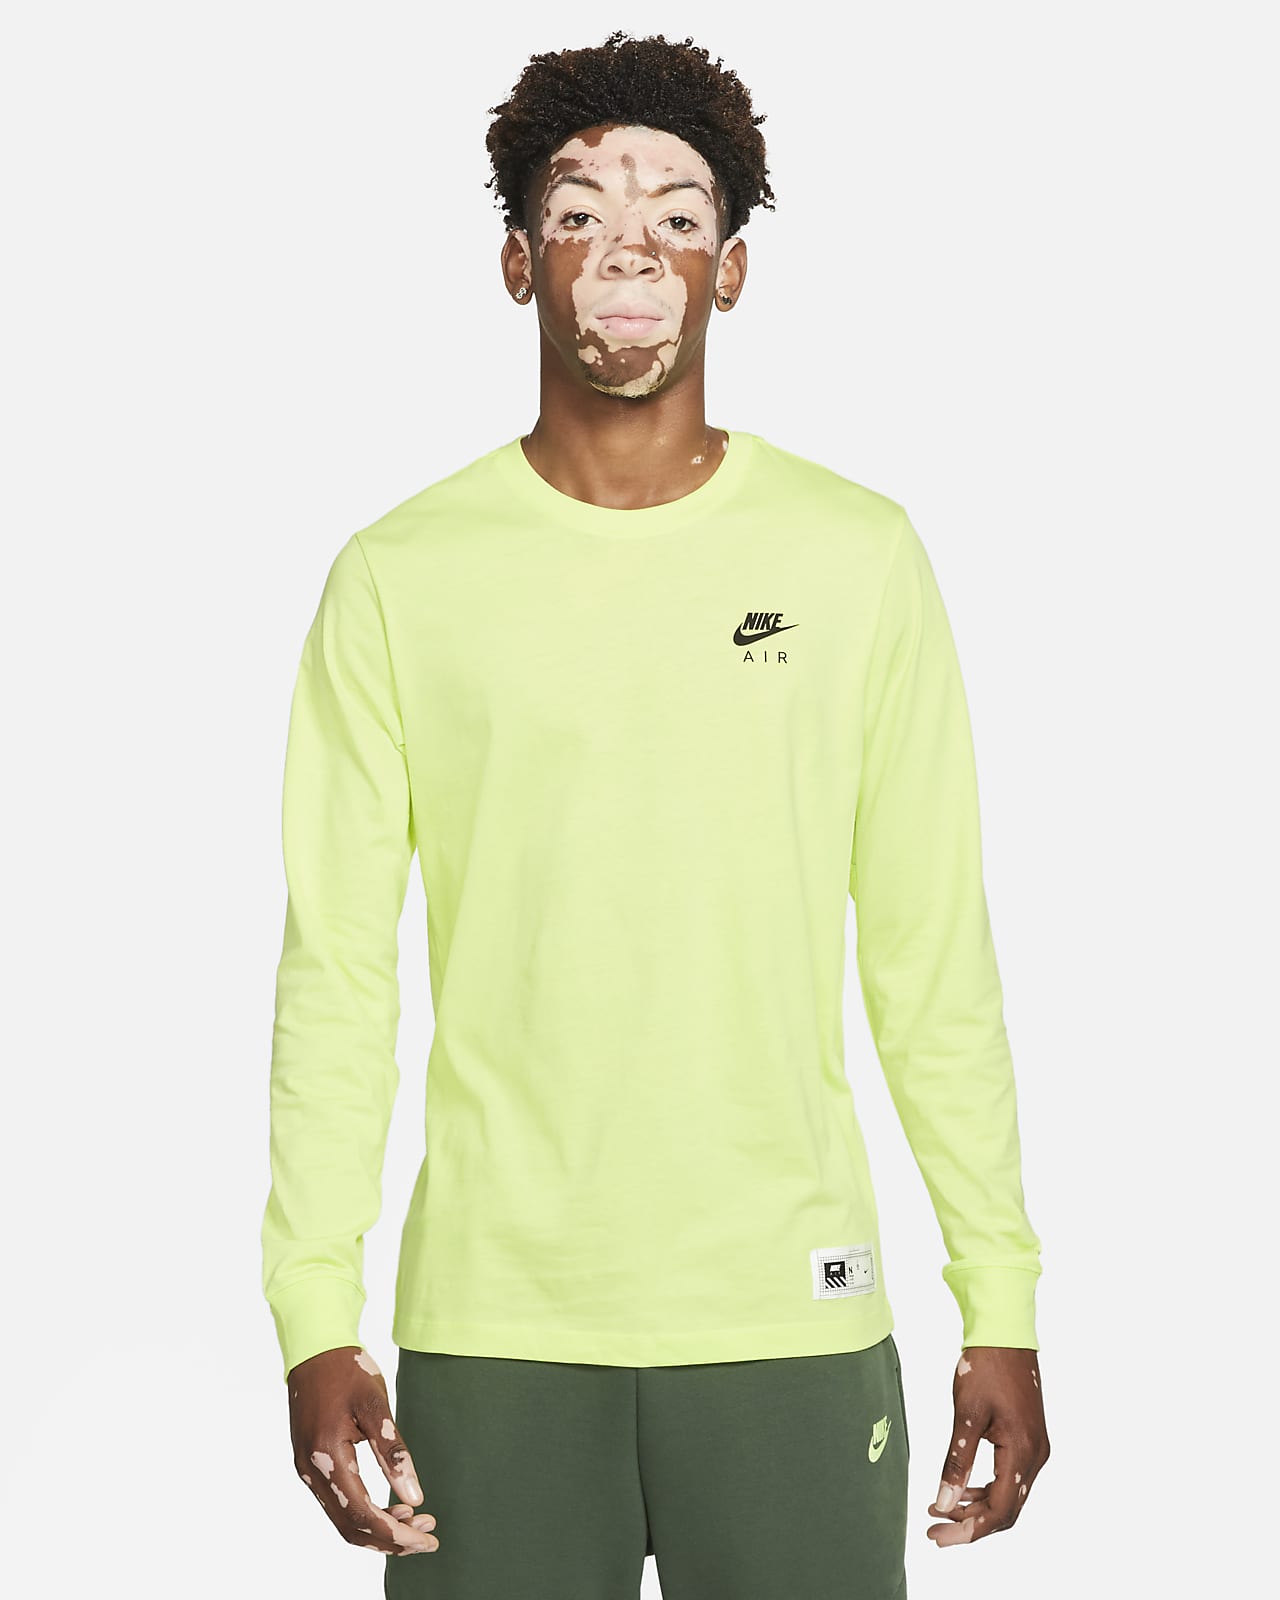 Nike Sportswear Men's Long-Sleeve T-Shirt.